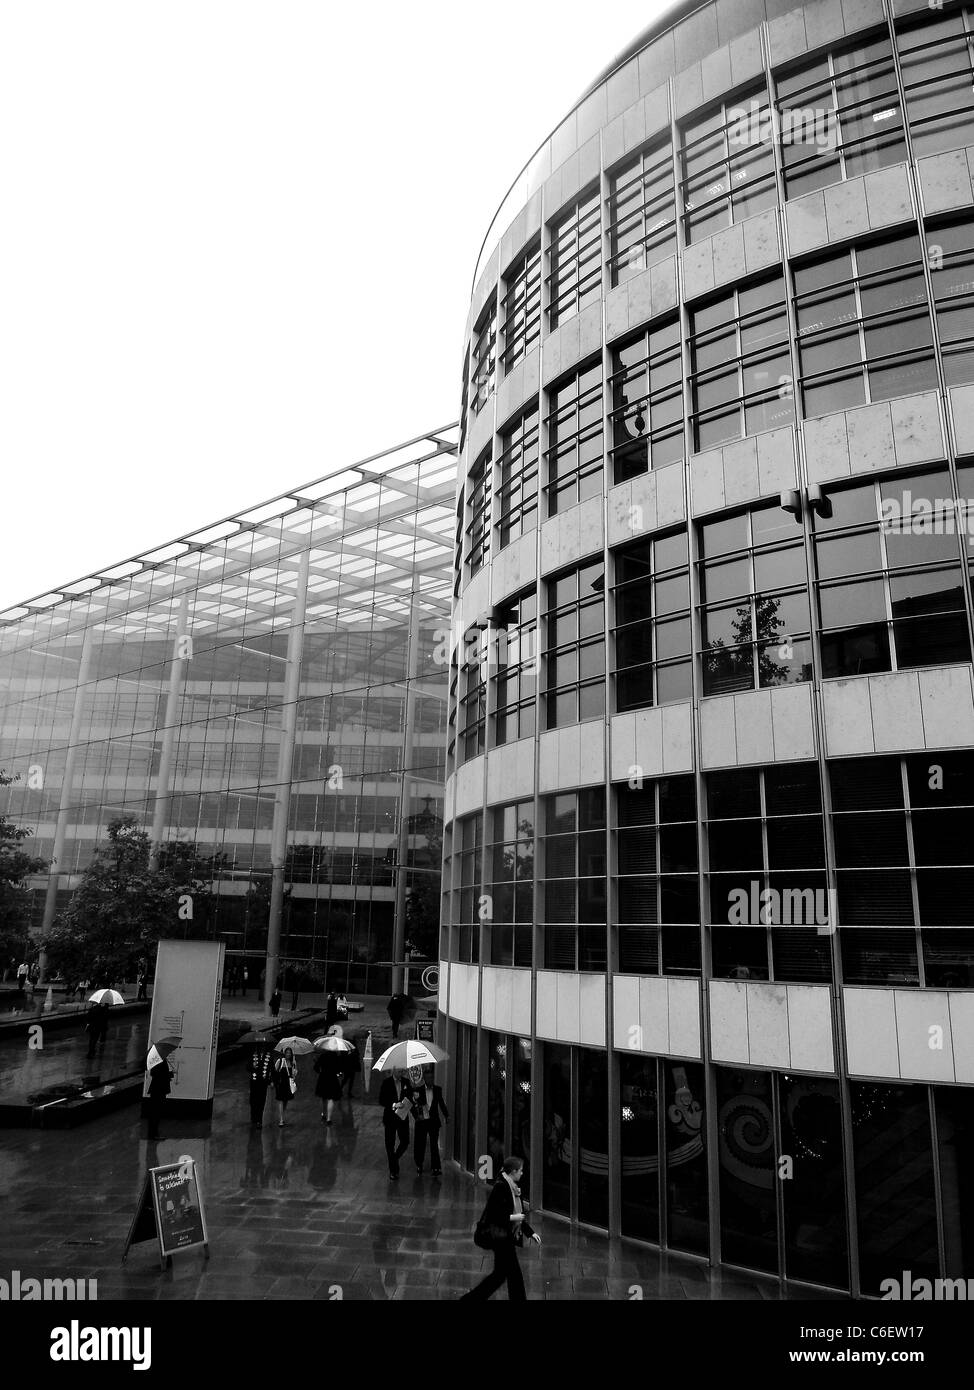 La ville de Londres Royaume-Uni Grande-Bretagne Royaume-Uni business building Banque D'Images